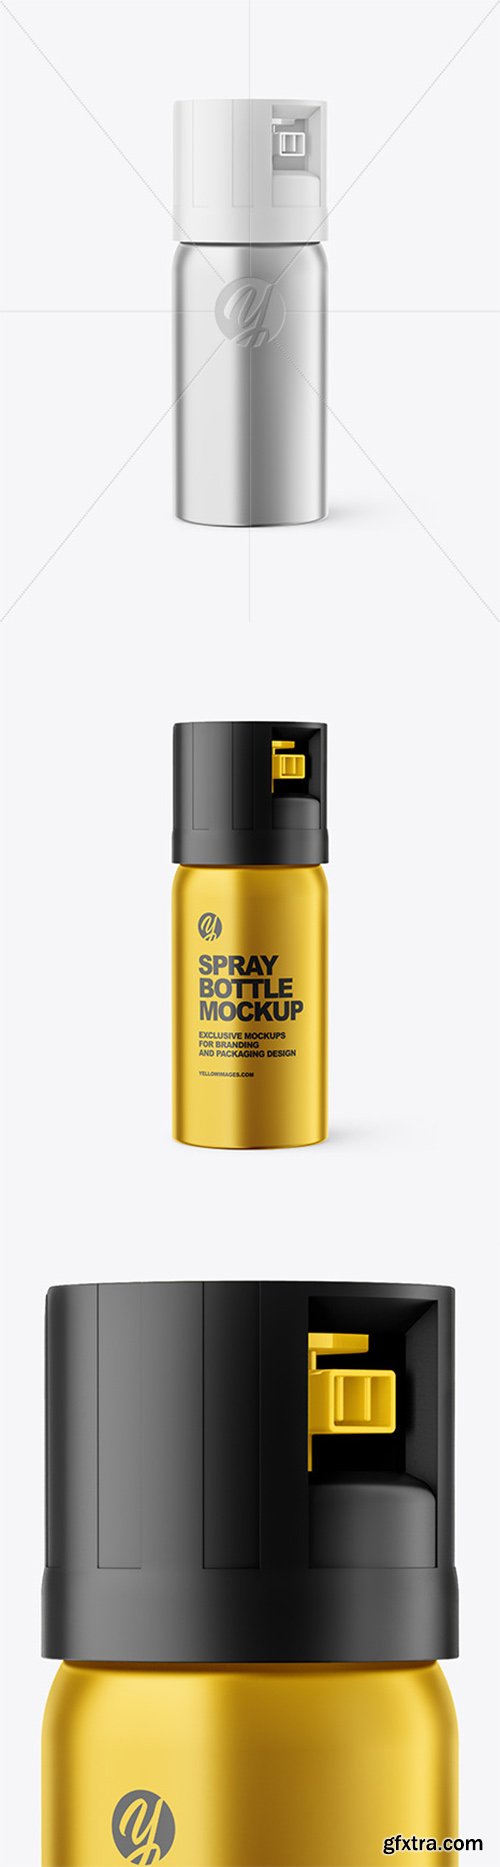 Metallic Pepper Spray Bottle Mockup 61480